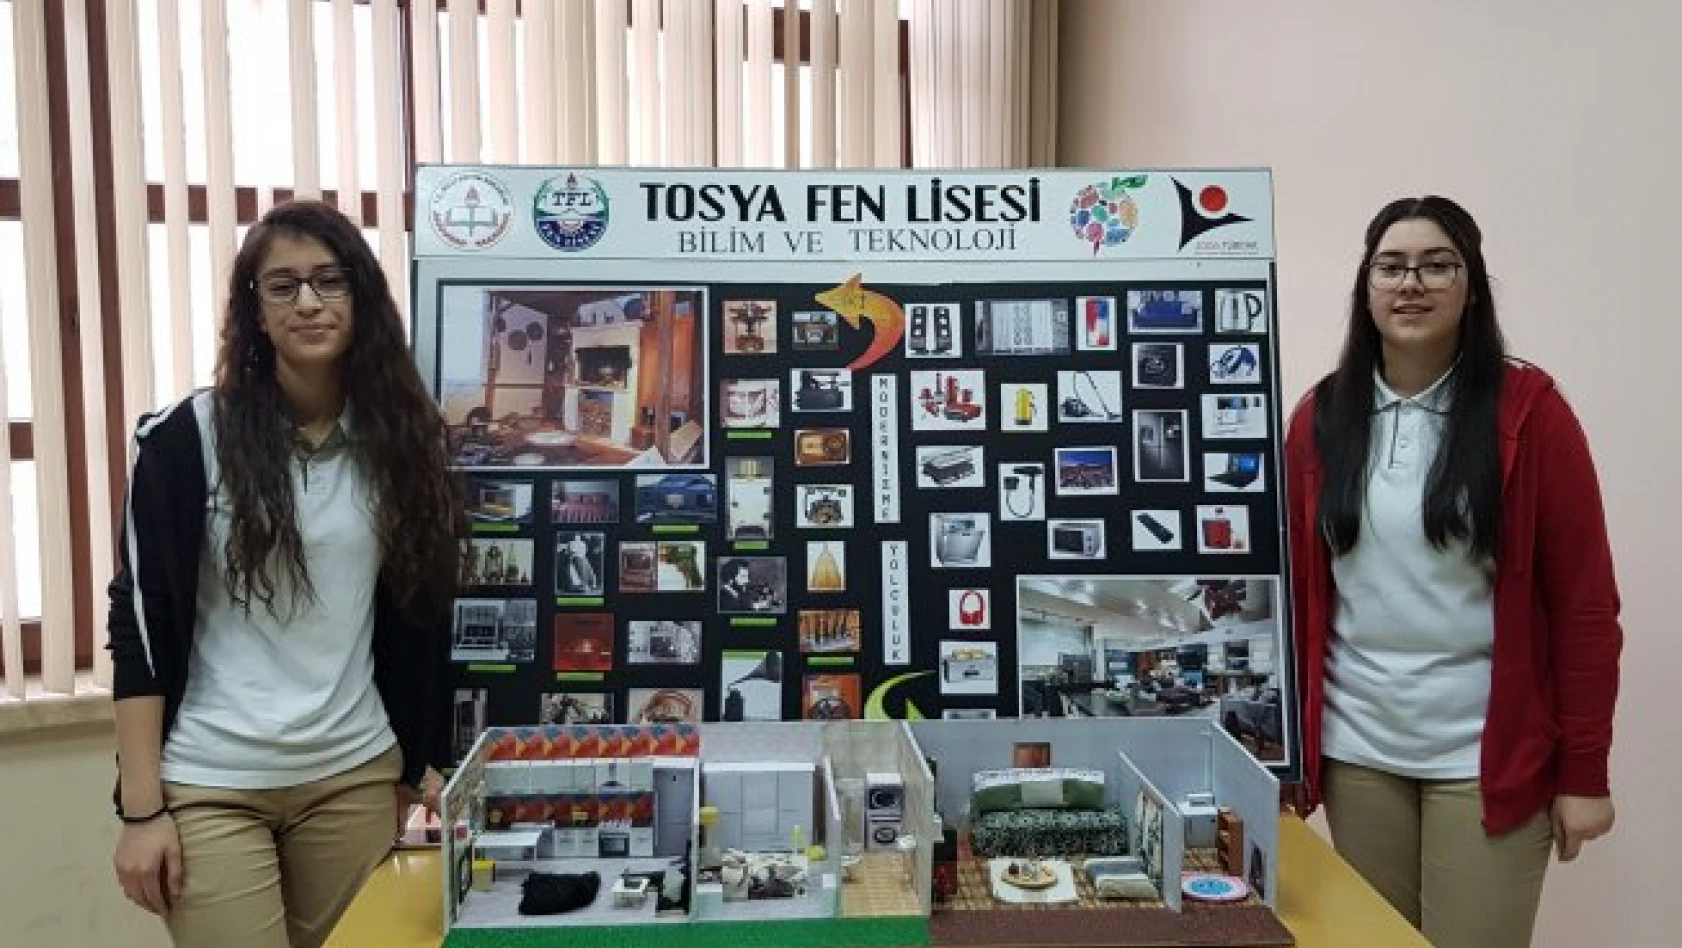 Tosya'da Bilim Teknoloji Haftası kutlandı 